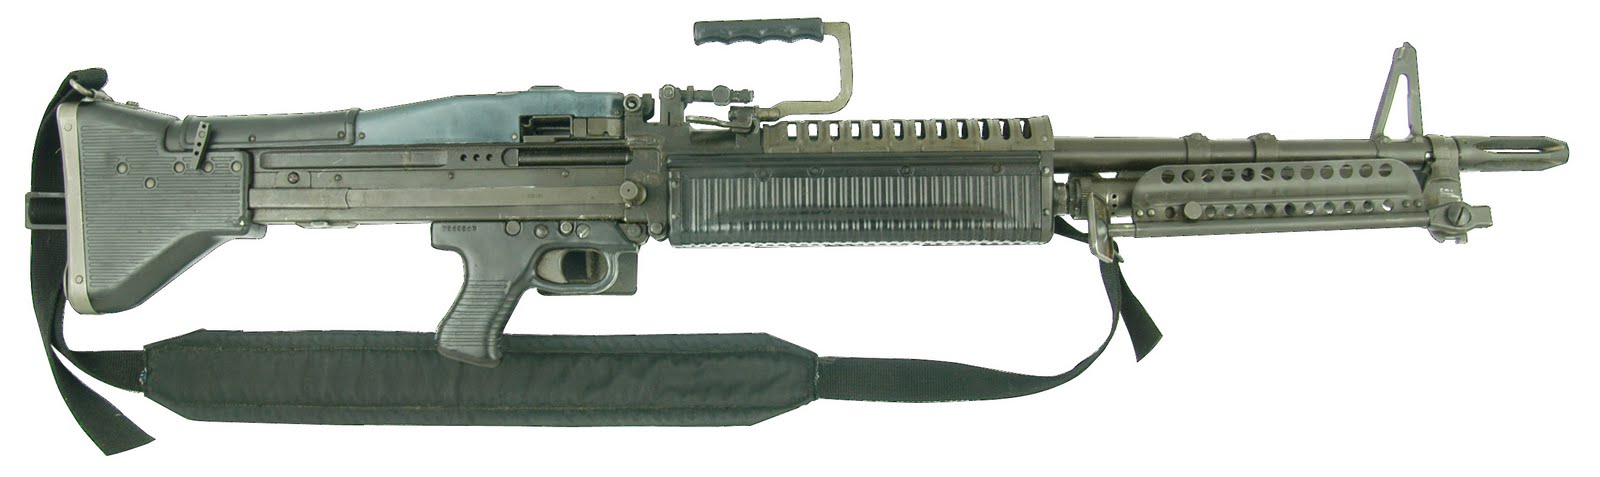 M60. Единый пулемет. (США)